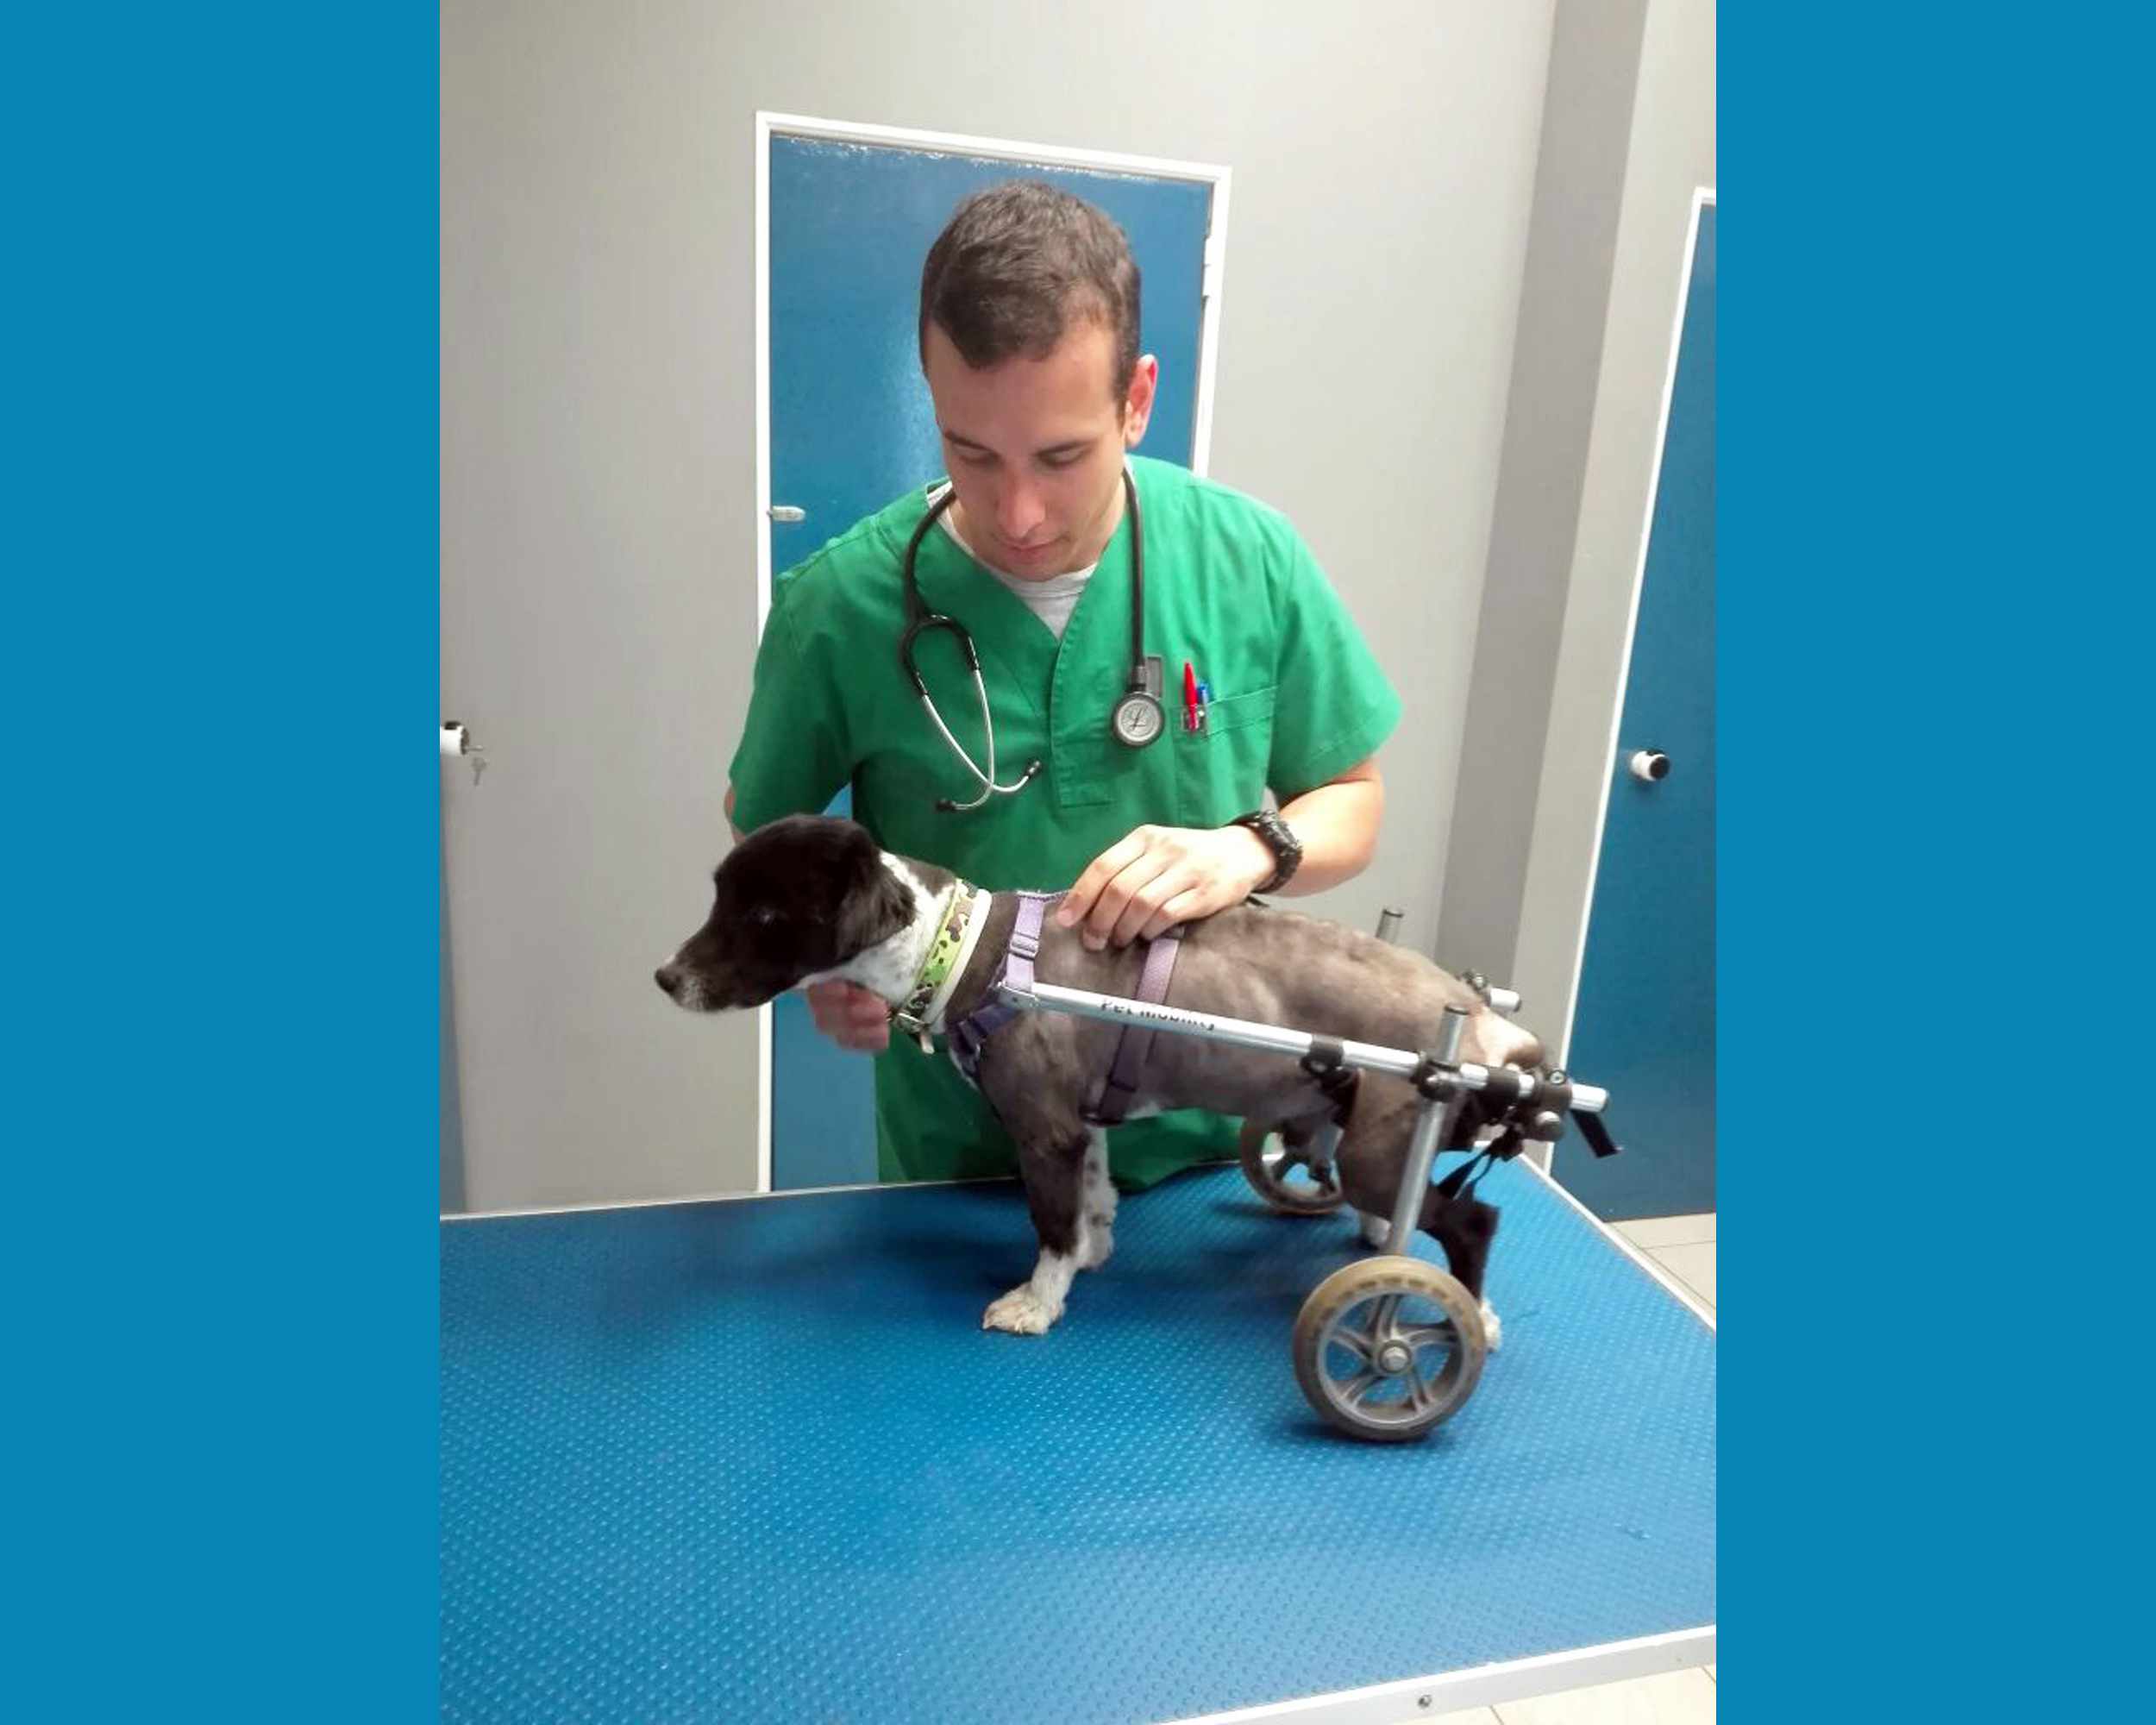 Αλέξανδρος Βαρδαξόγλου. Ο Έλληνας κτηνίατρος που κατασκευάζει αναπηρικά αμαξίδια για κατοικίδια ζωάκια